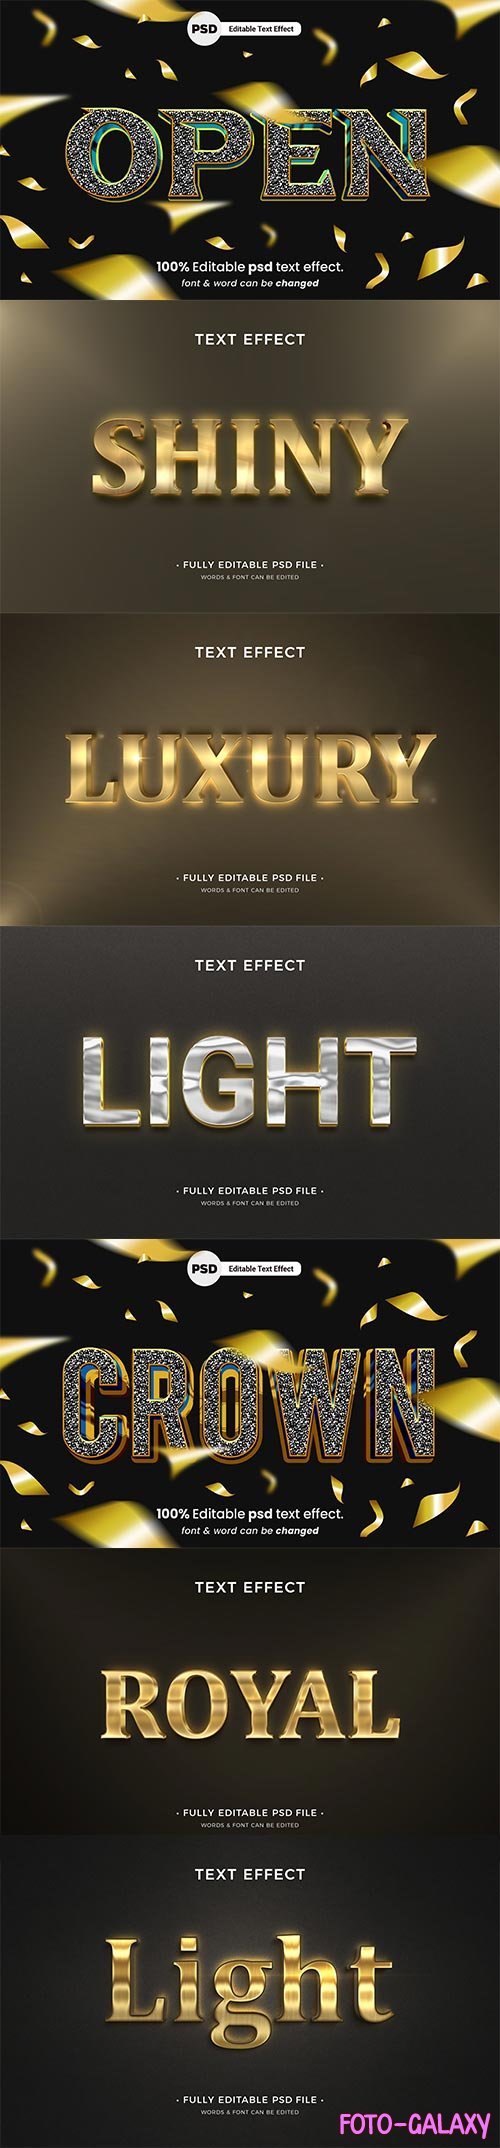 Psd text effect set vol 651